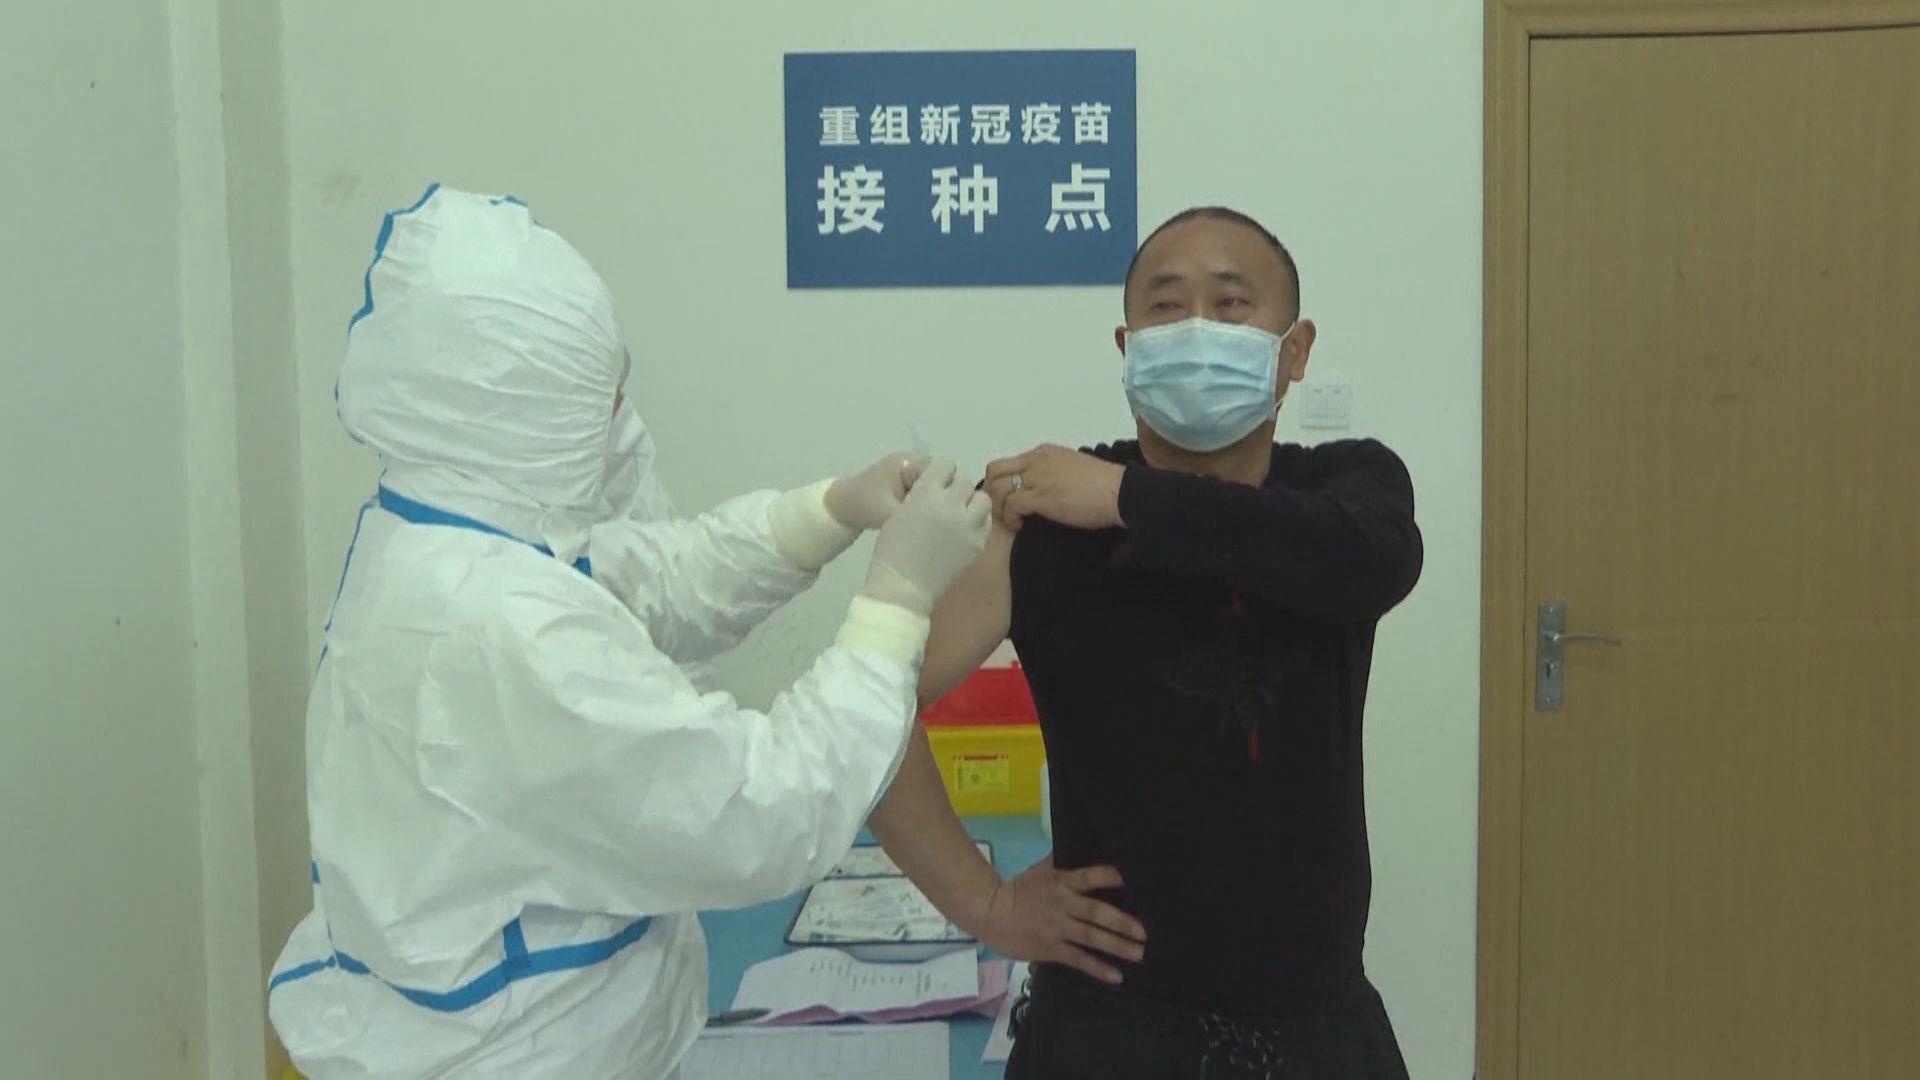 中國團隊發表新冠疫苗臨床試驗初步結果　顯示疫苗安全